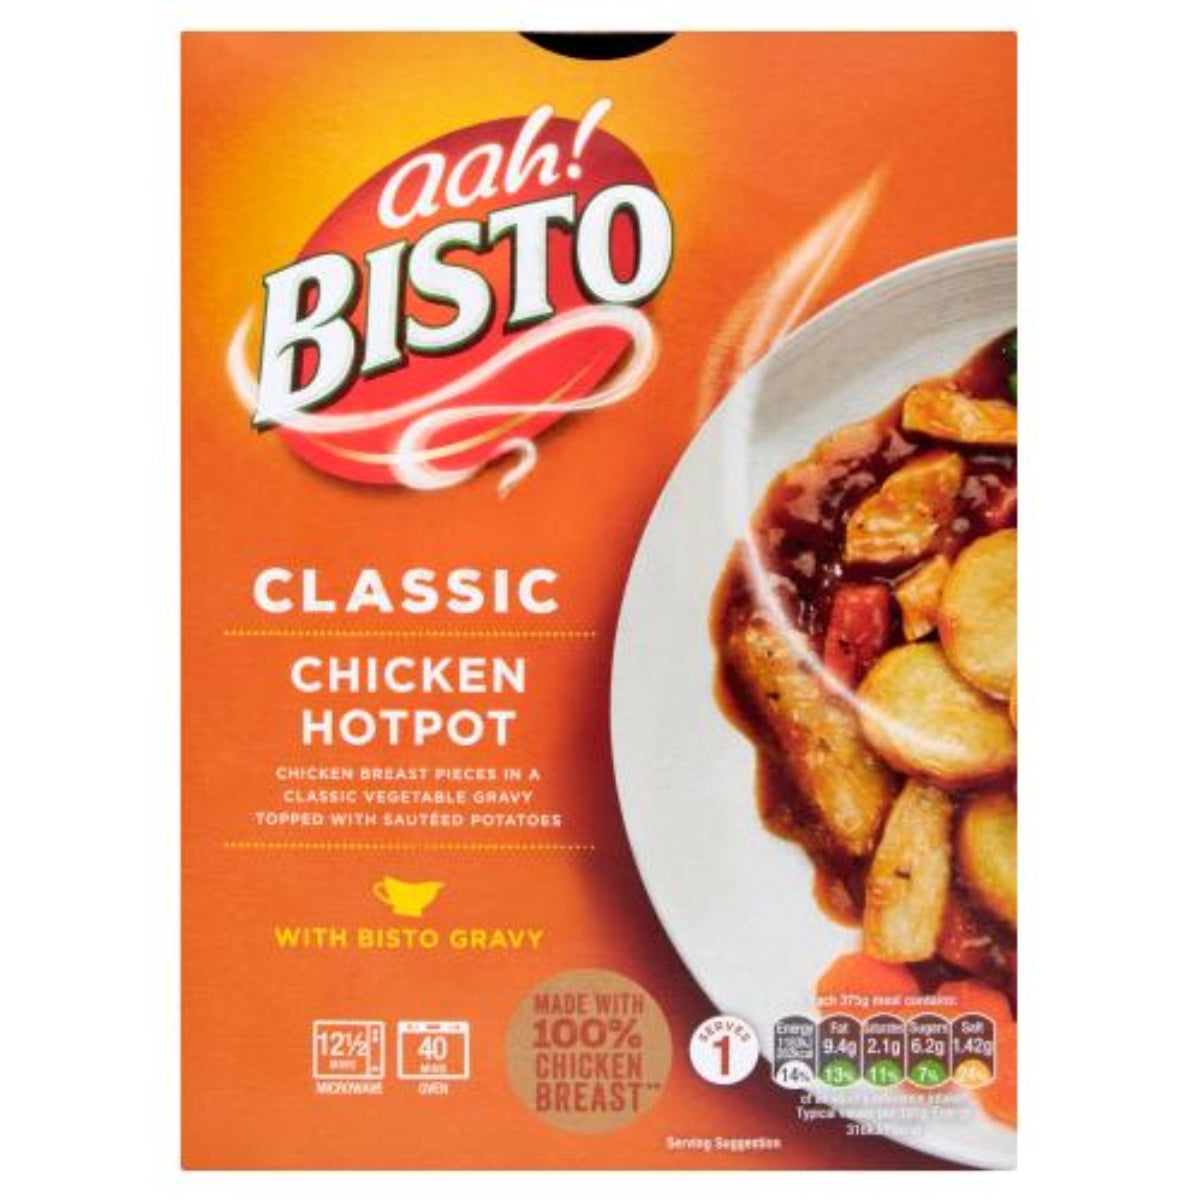 Old Bisto - Chicken Hotpot - 375g.